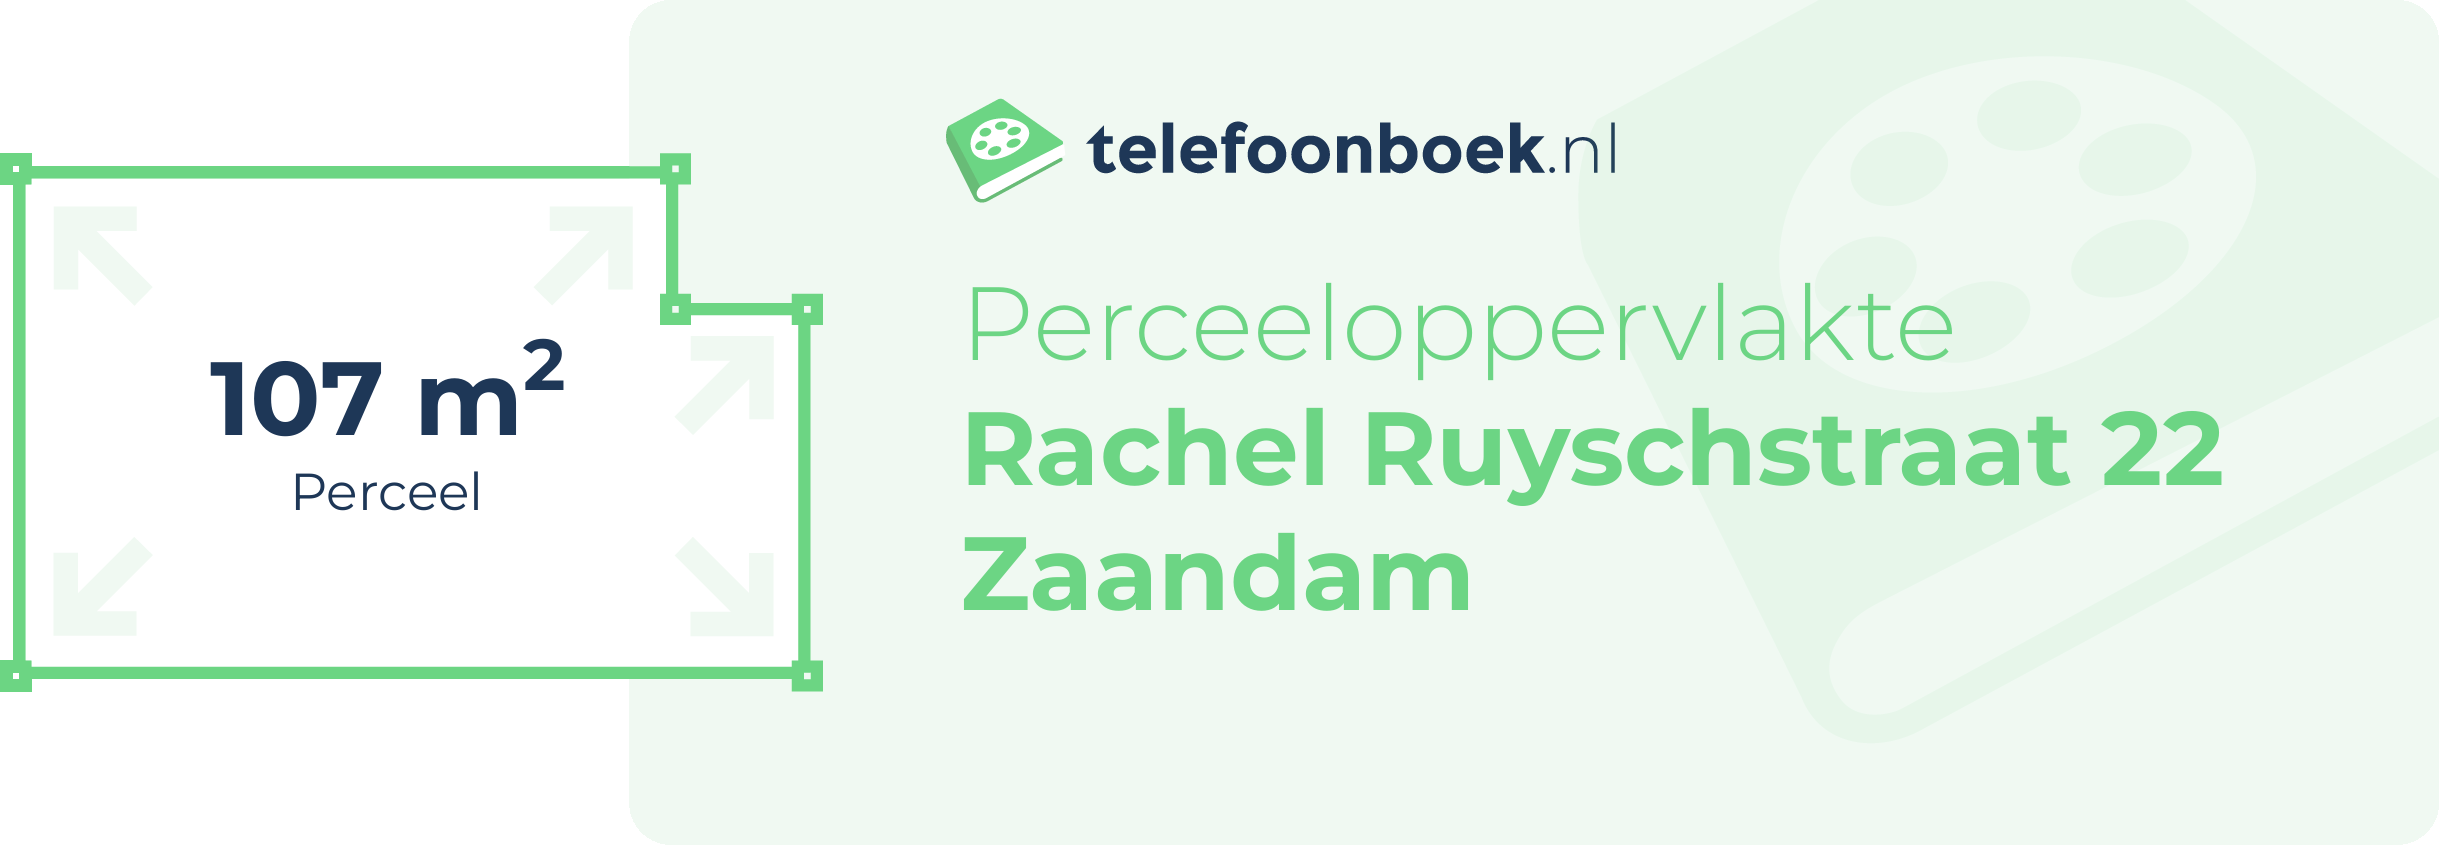 Perceeloppervlakte Rachel Ruyschstraat 22 Zaandam